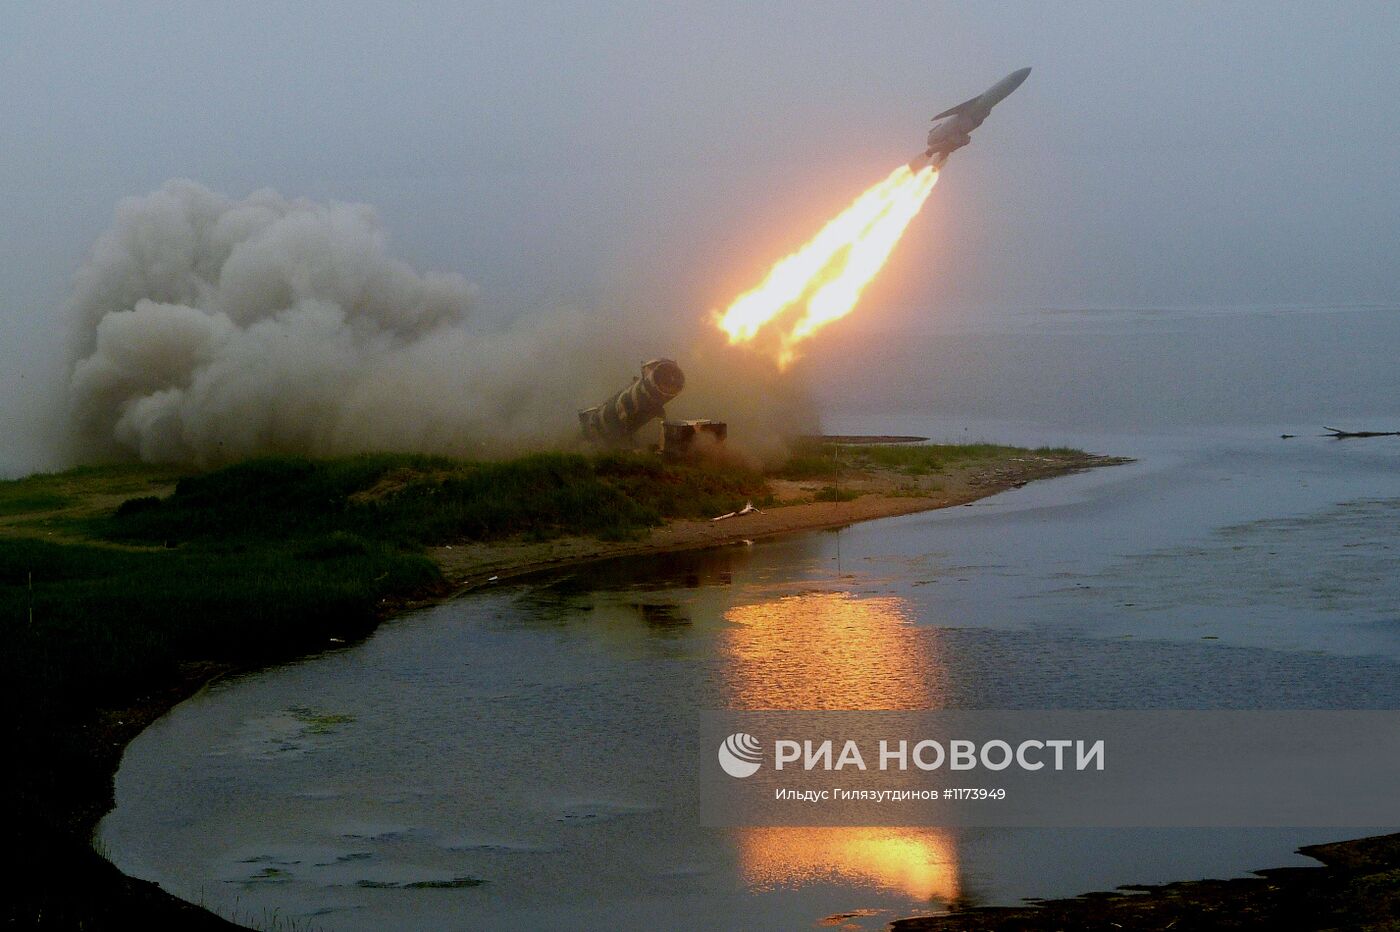 Пуск ракеты берегового комплекса "Редут"